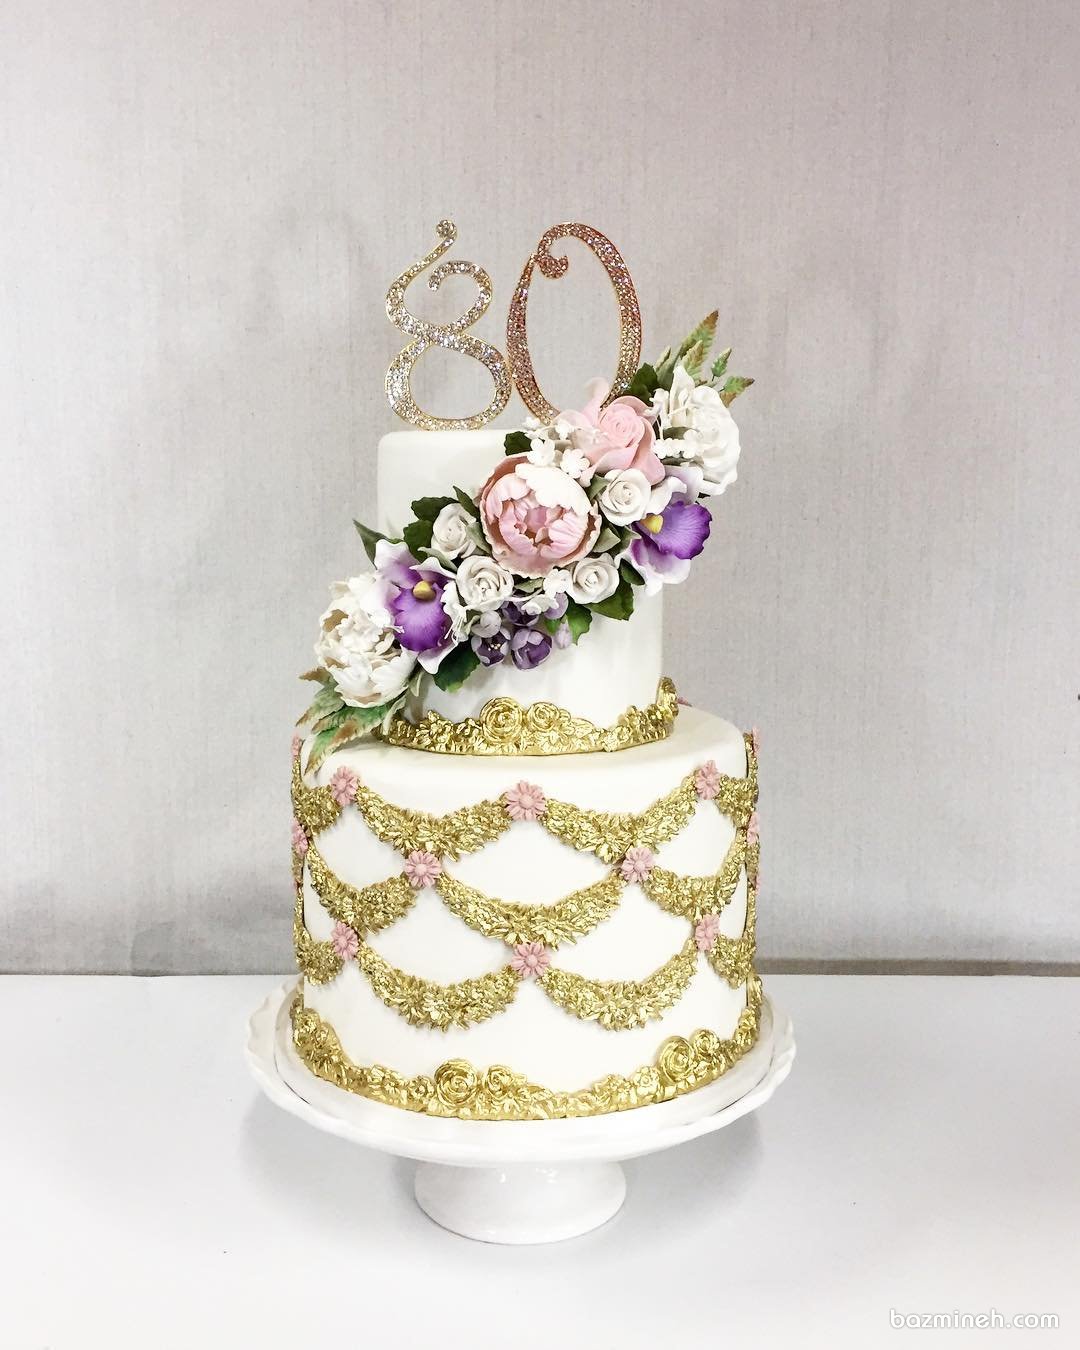 کیک لوکس جشن تولد بزرگسالان تزیین شده با طرح های طلایی و گل های مصنوعی